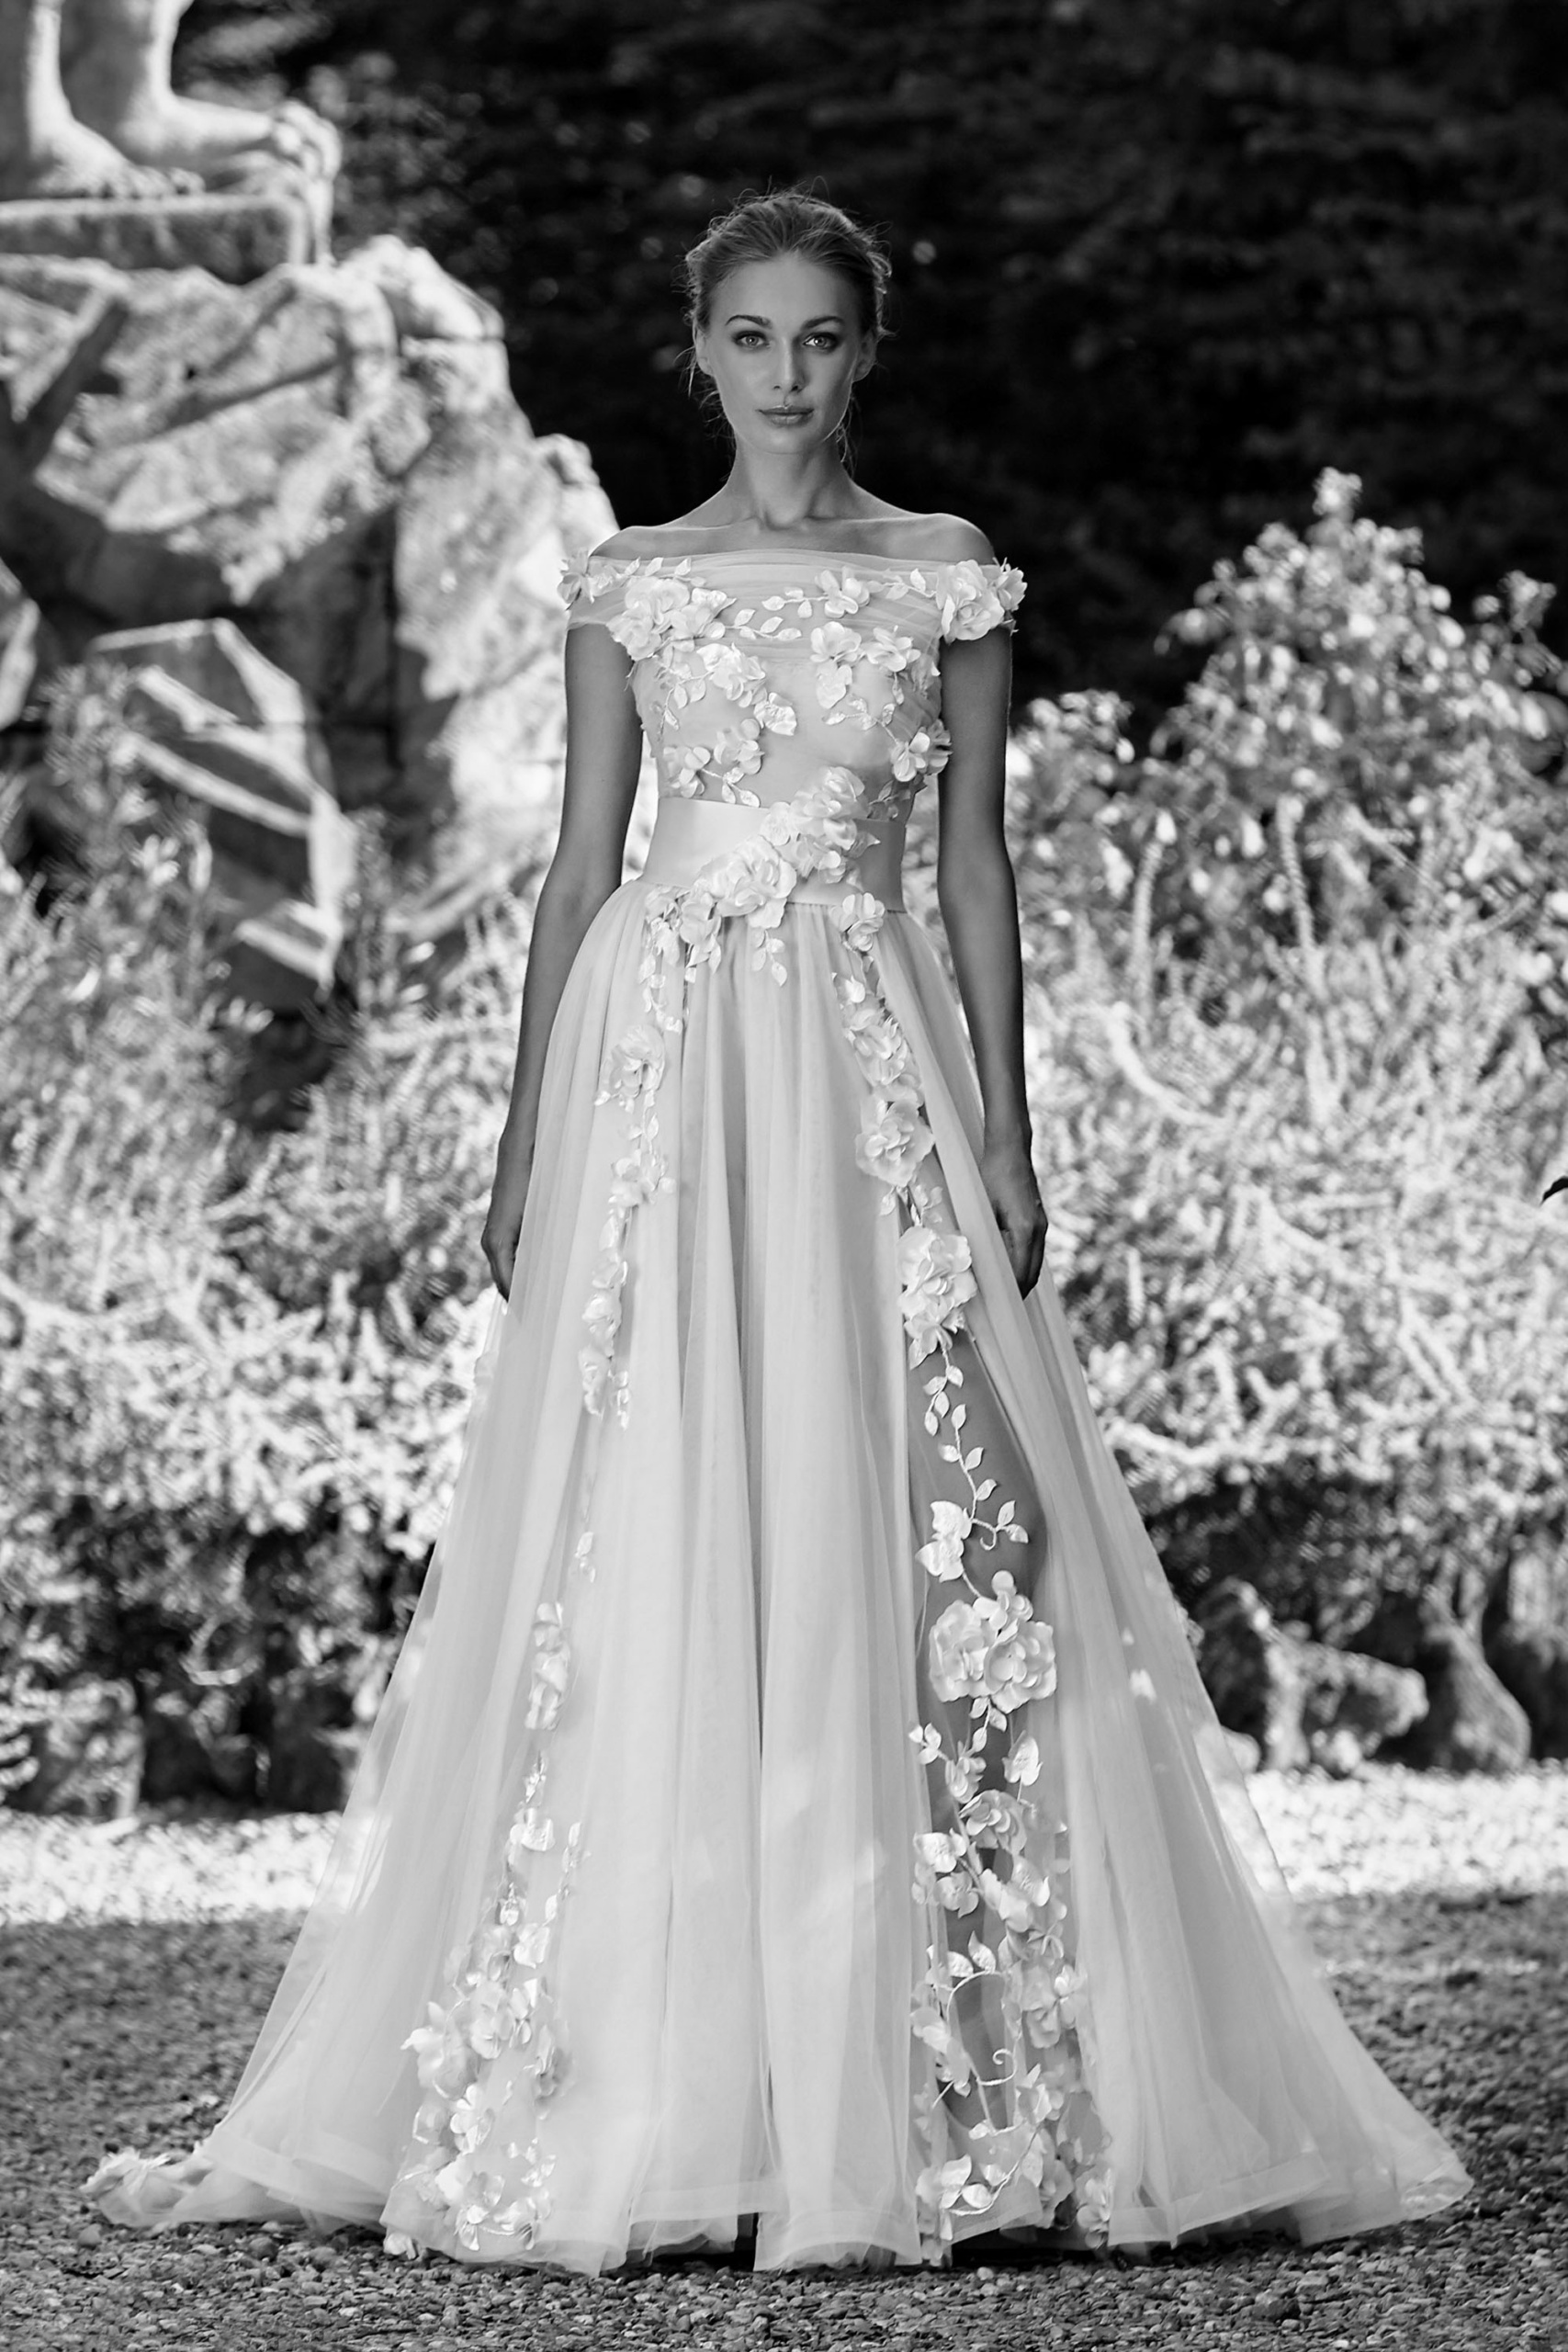 Abiti da Sposa Fano: Lusso Dipinto di Vogue Style - Alta Moda Sposa 100% Made in Italy per una Sposa Unica ed Esclusiva!